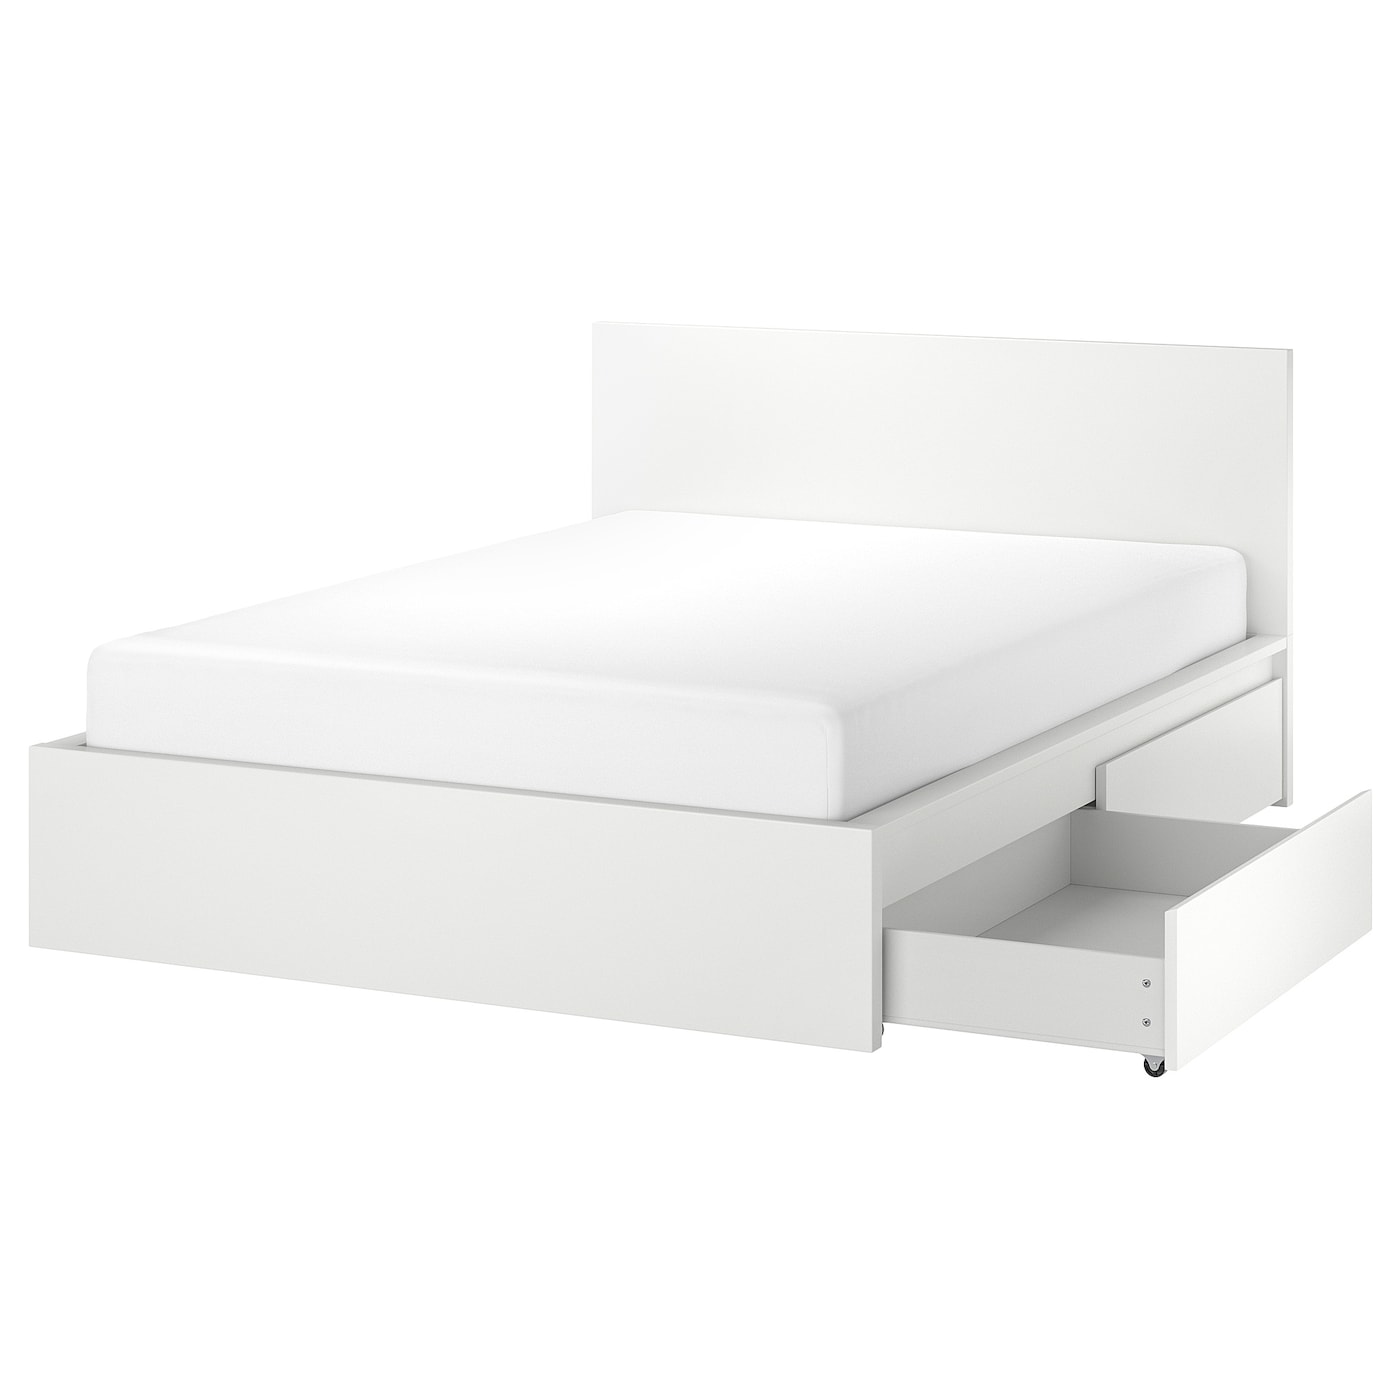 Каркас кровати с 2 ящиками для хранения - IKEA MALM/LОNSET/LÖNSET , 140х200 см, белый МАЛЬМ/ЛОНСЕТ ИКЕА